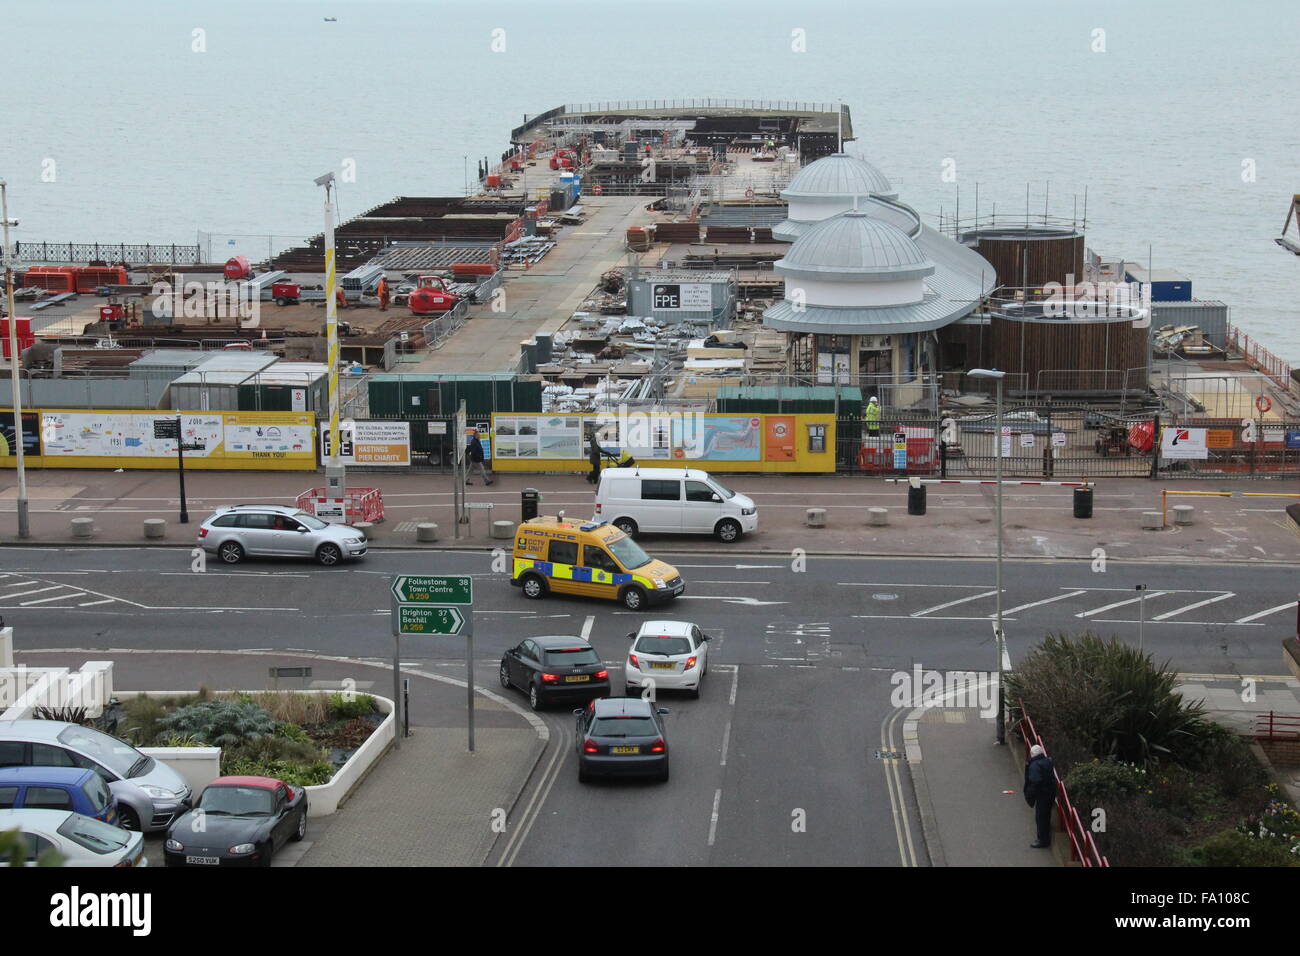 Ein Foto von oben zeigt, Restaurierung und Renovierung der Brand geschädigte Hastings Pier in East Sussex, UK im März 2015. Stockfoto